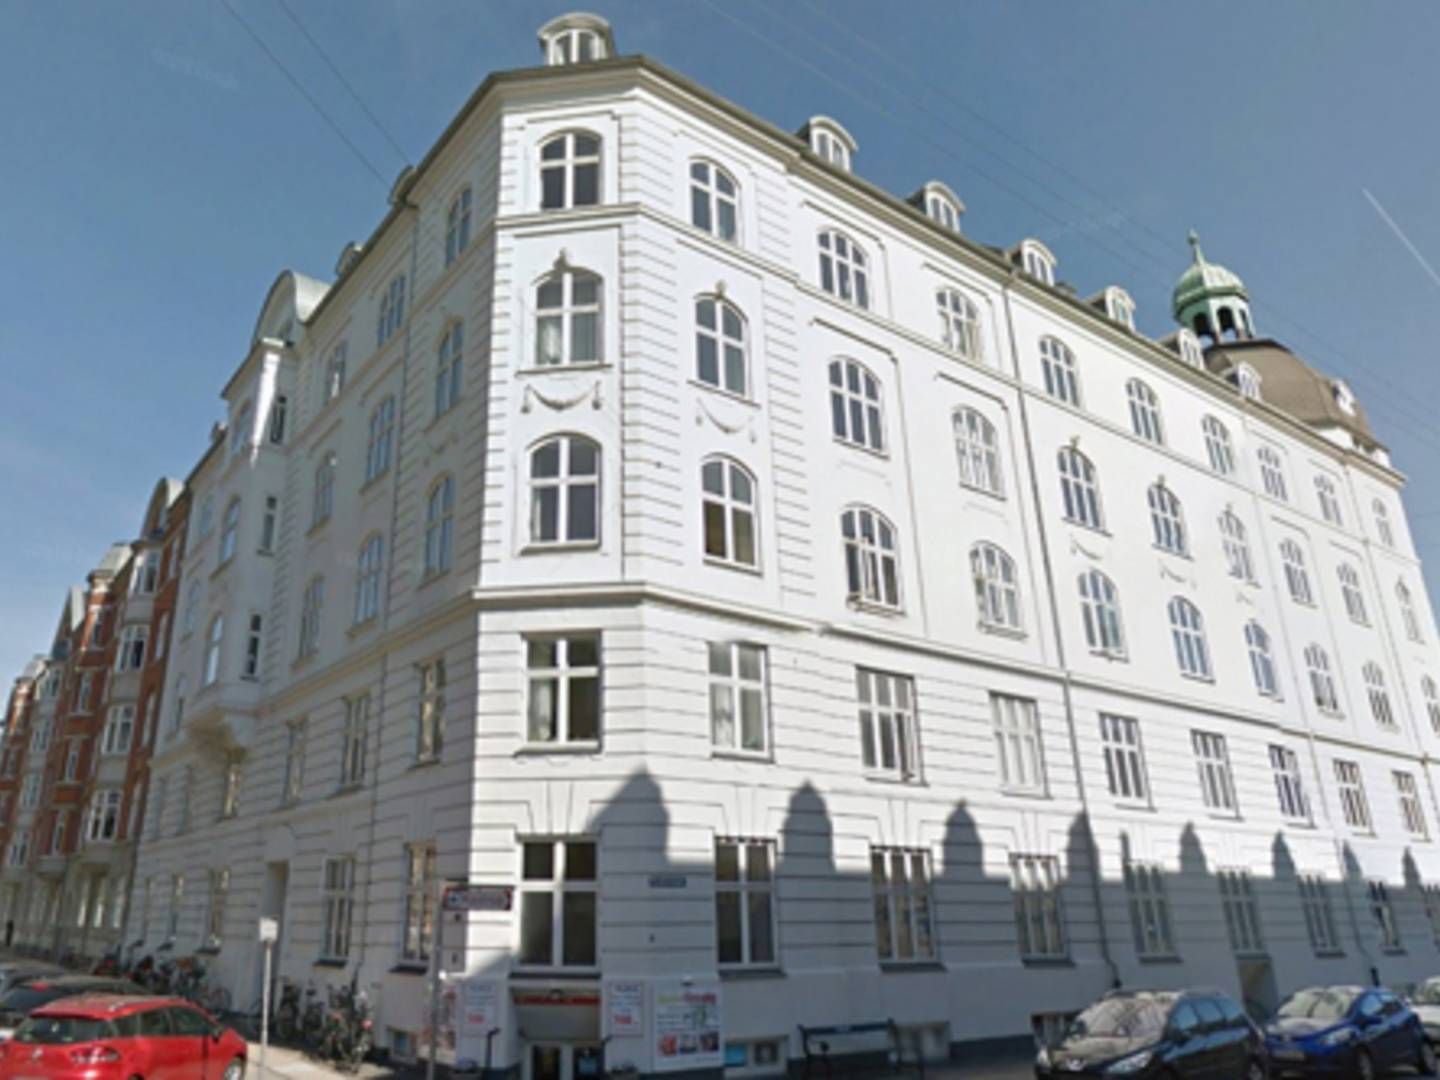 En boligejendom i Puggaardsgade, som ligger mellem Tivoli og Kalvebod Brygge i København, indgår i porteføljen. | Foto: Google Maps